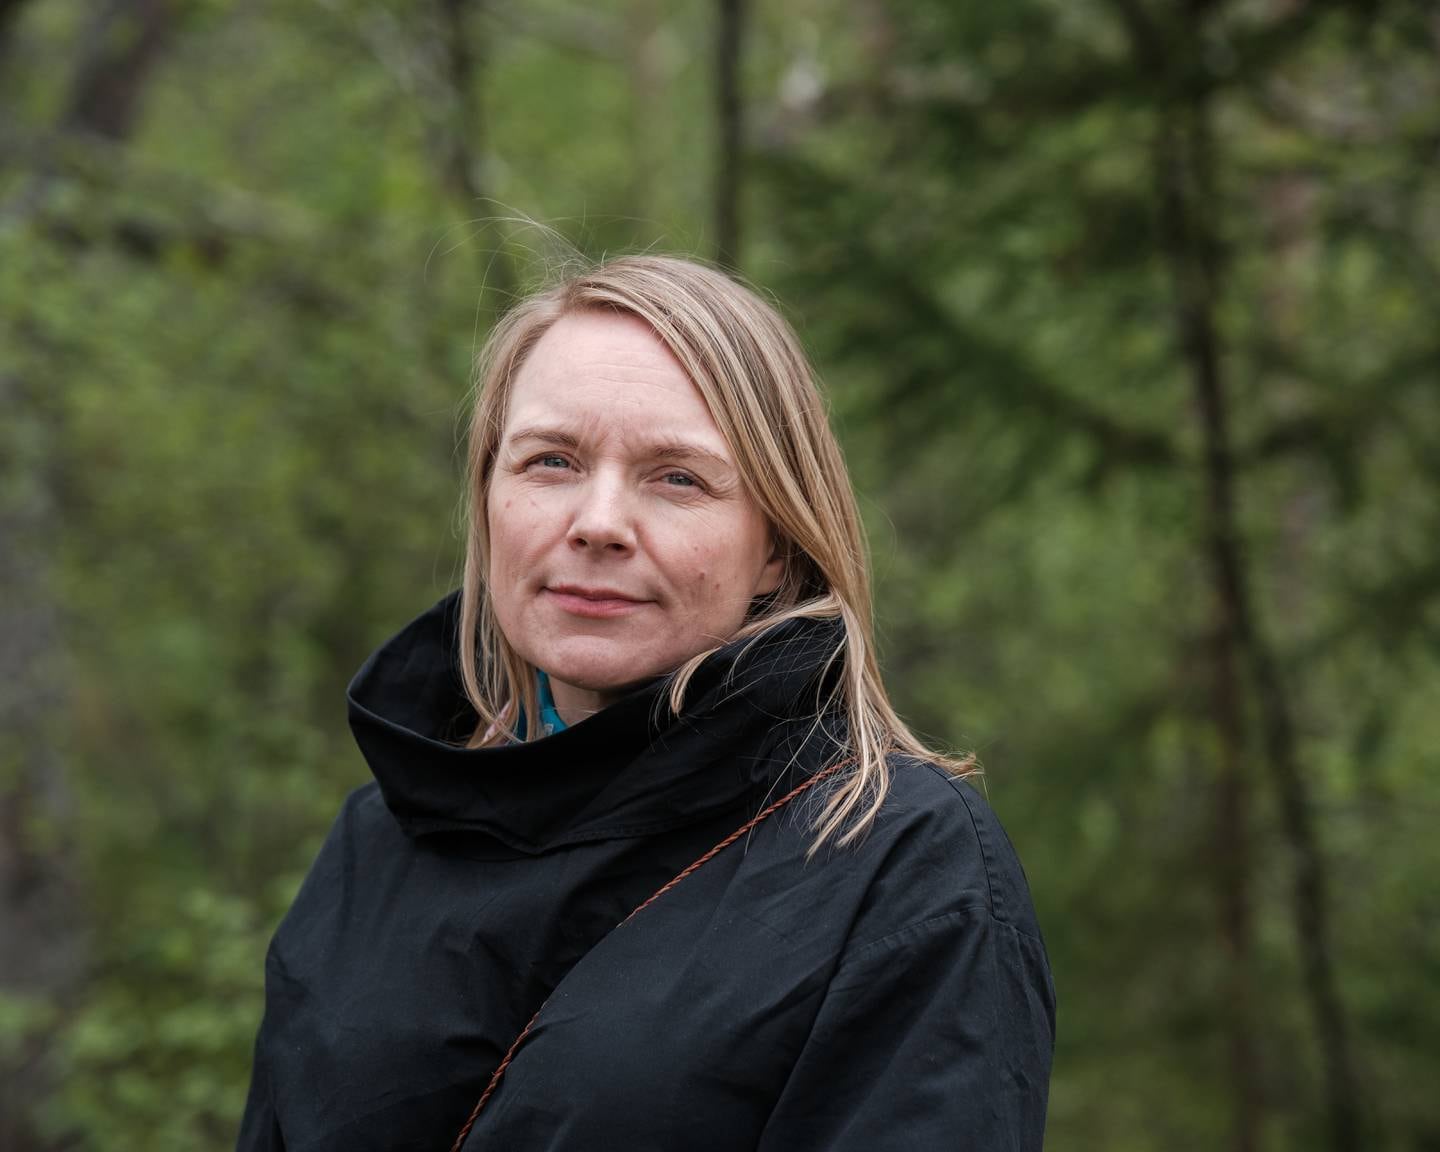 Preses på besøk i Tysfjord / Hamarøy. Kristina Labba, generalsekretær i Samisk kirkeråd.